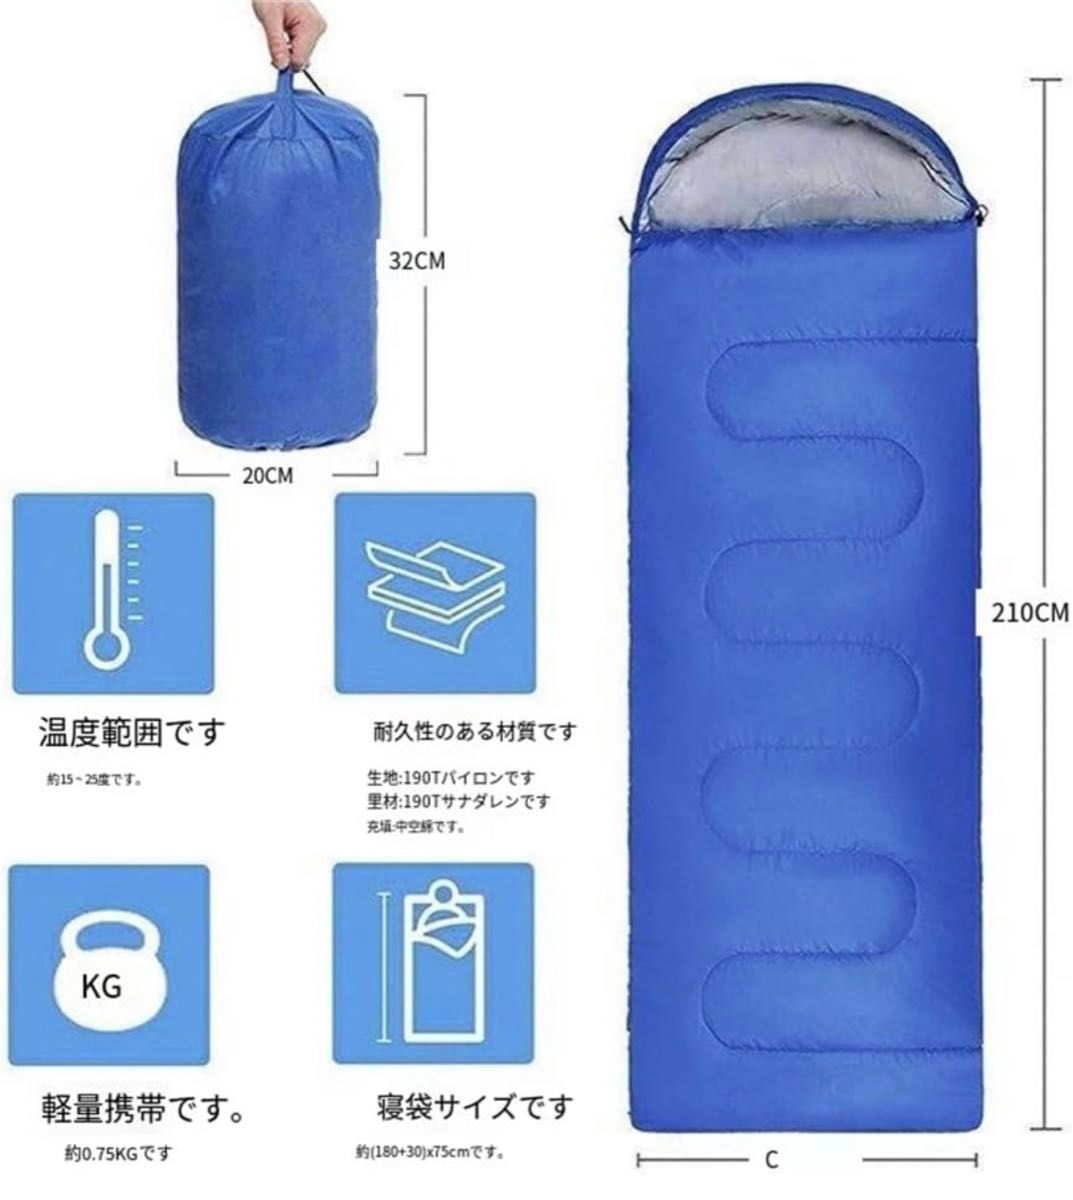 寝袋 封筒型 シュラフ 軽量 保温 耐寒 210T防水 コンパクト アウトドア 